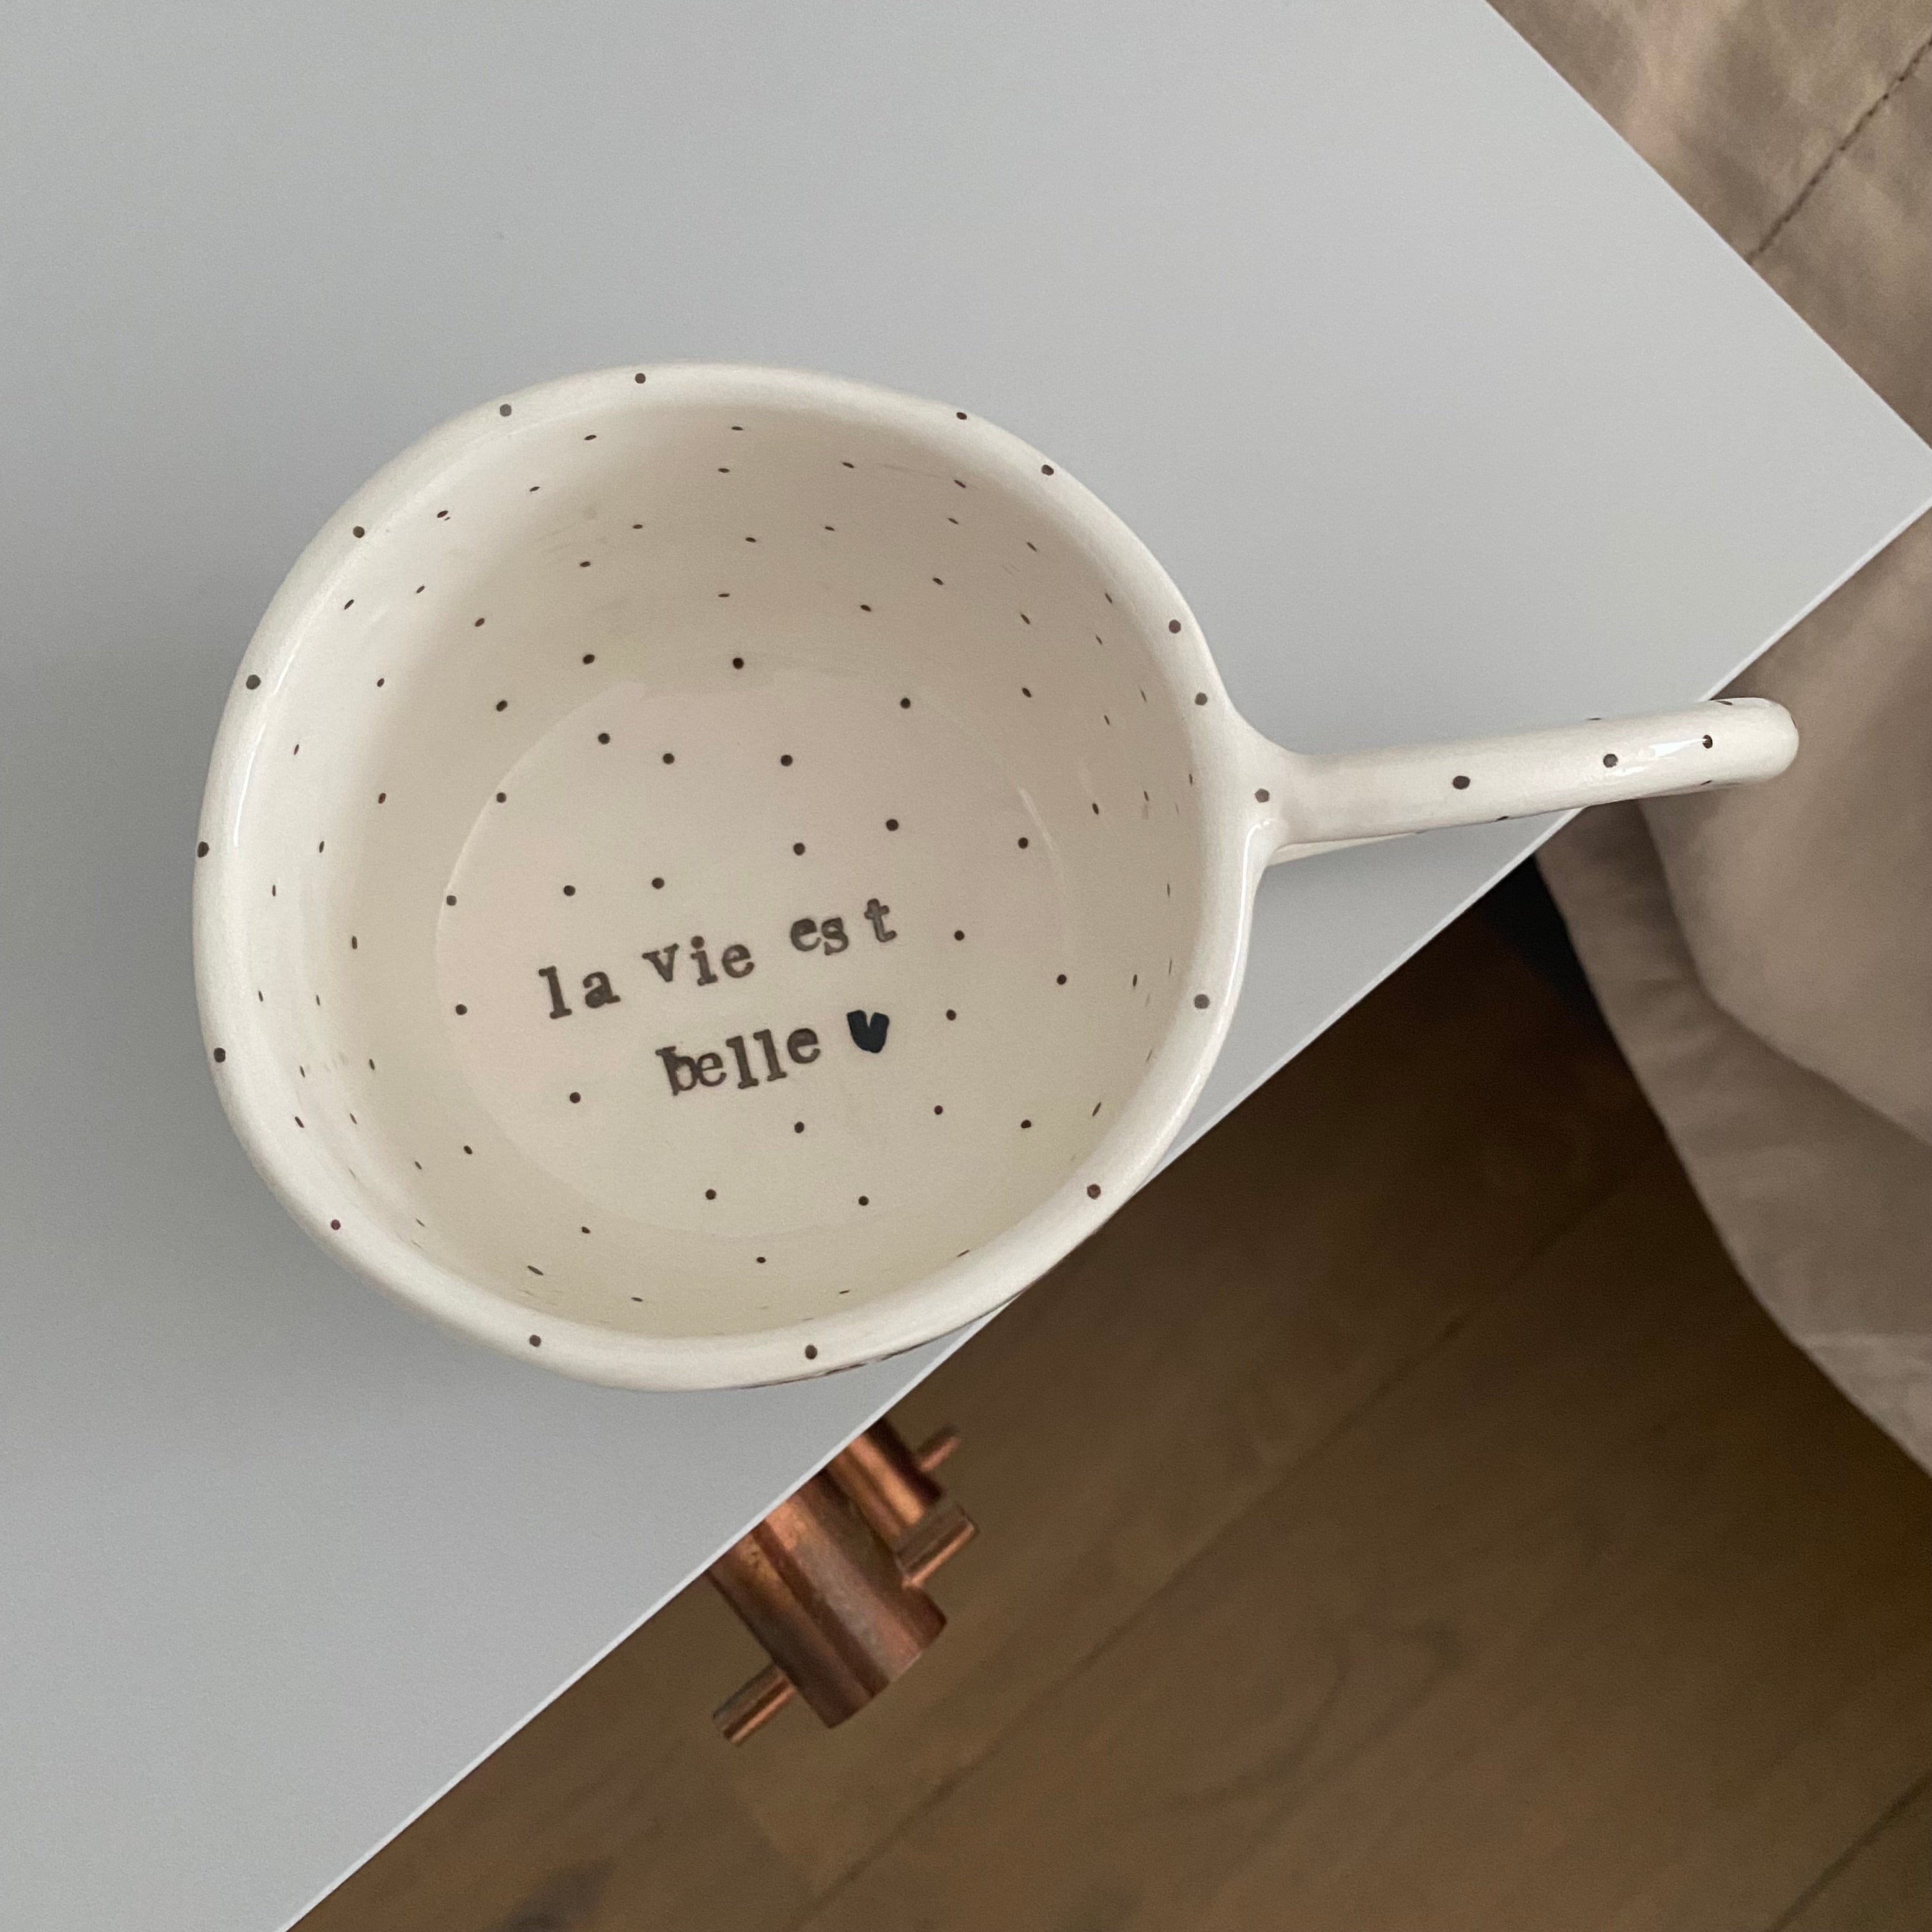 Terra Ceramica pinch cup with text, Bonjour, la vie est belle - white